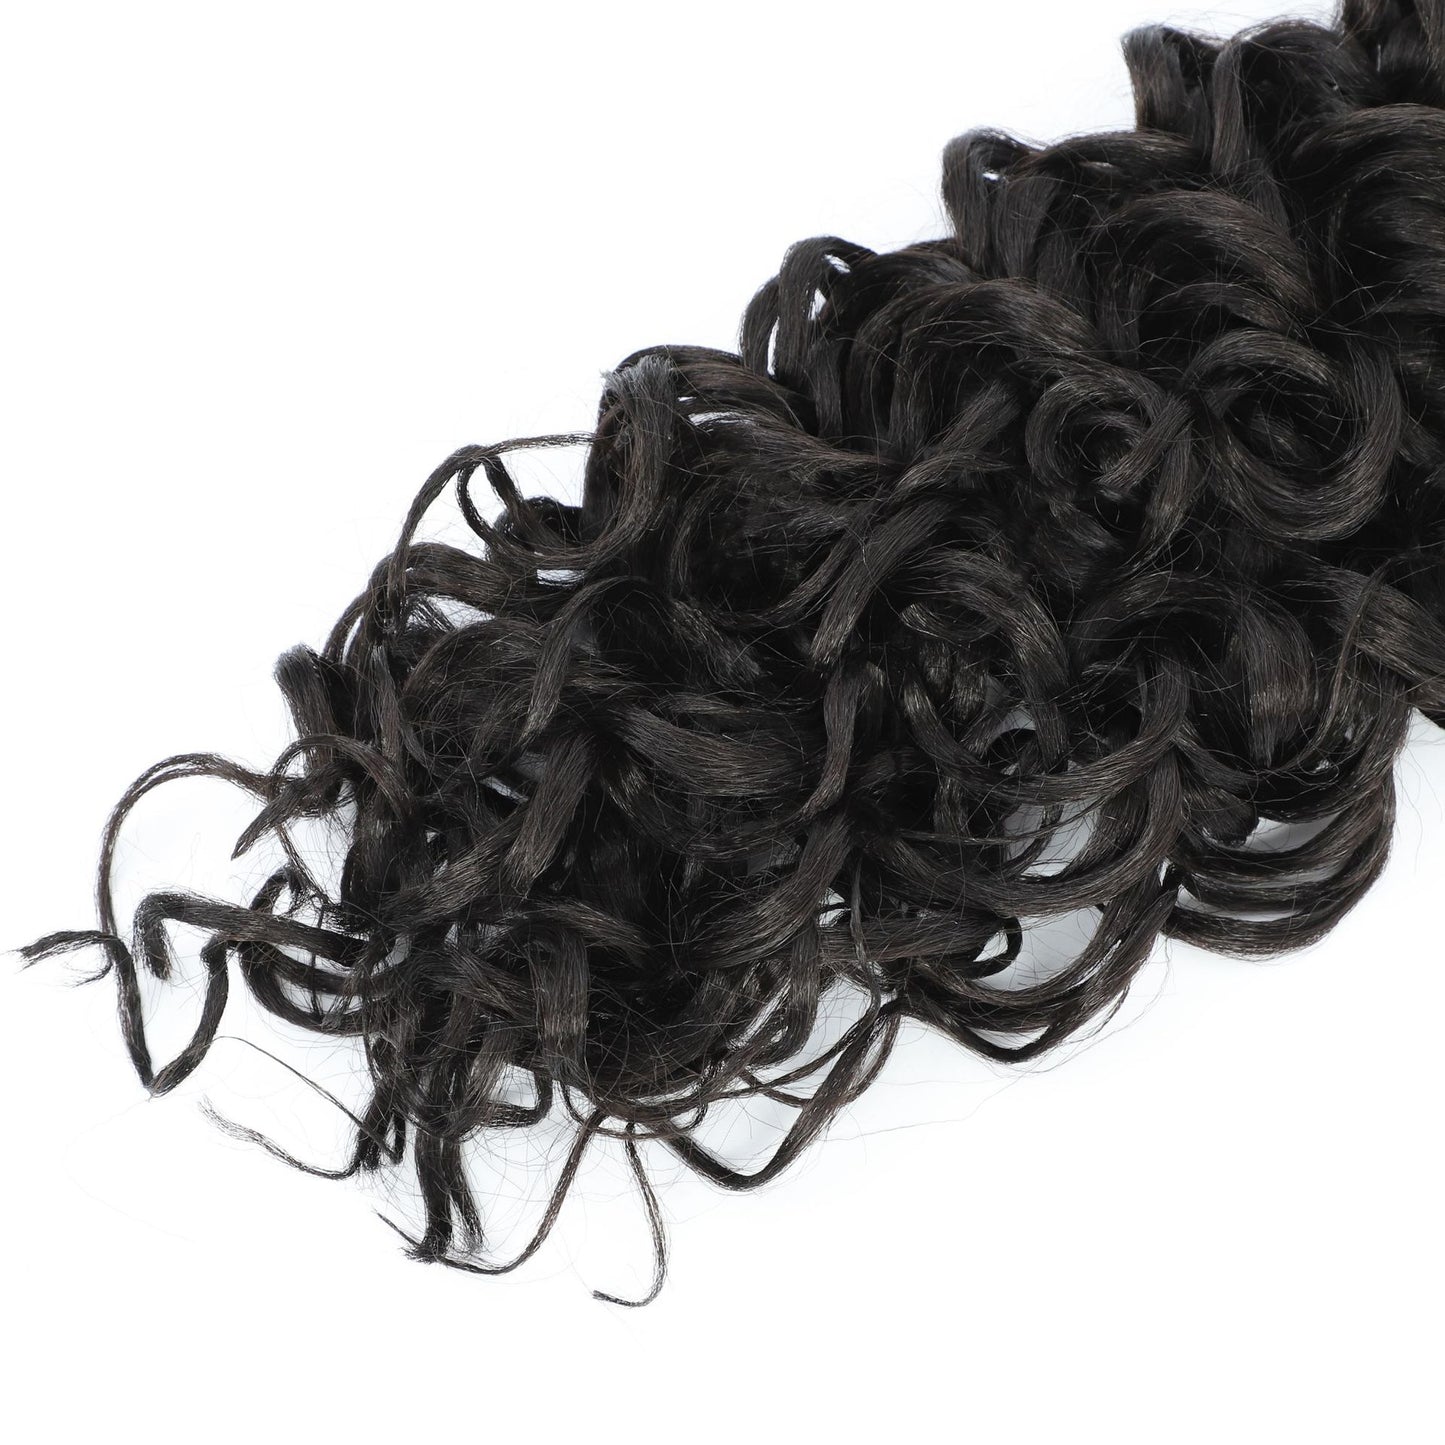 New Crochet Wavy Braid Curls